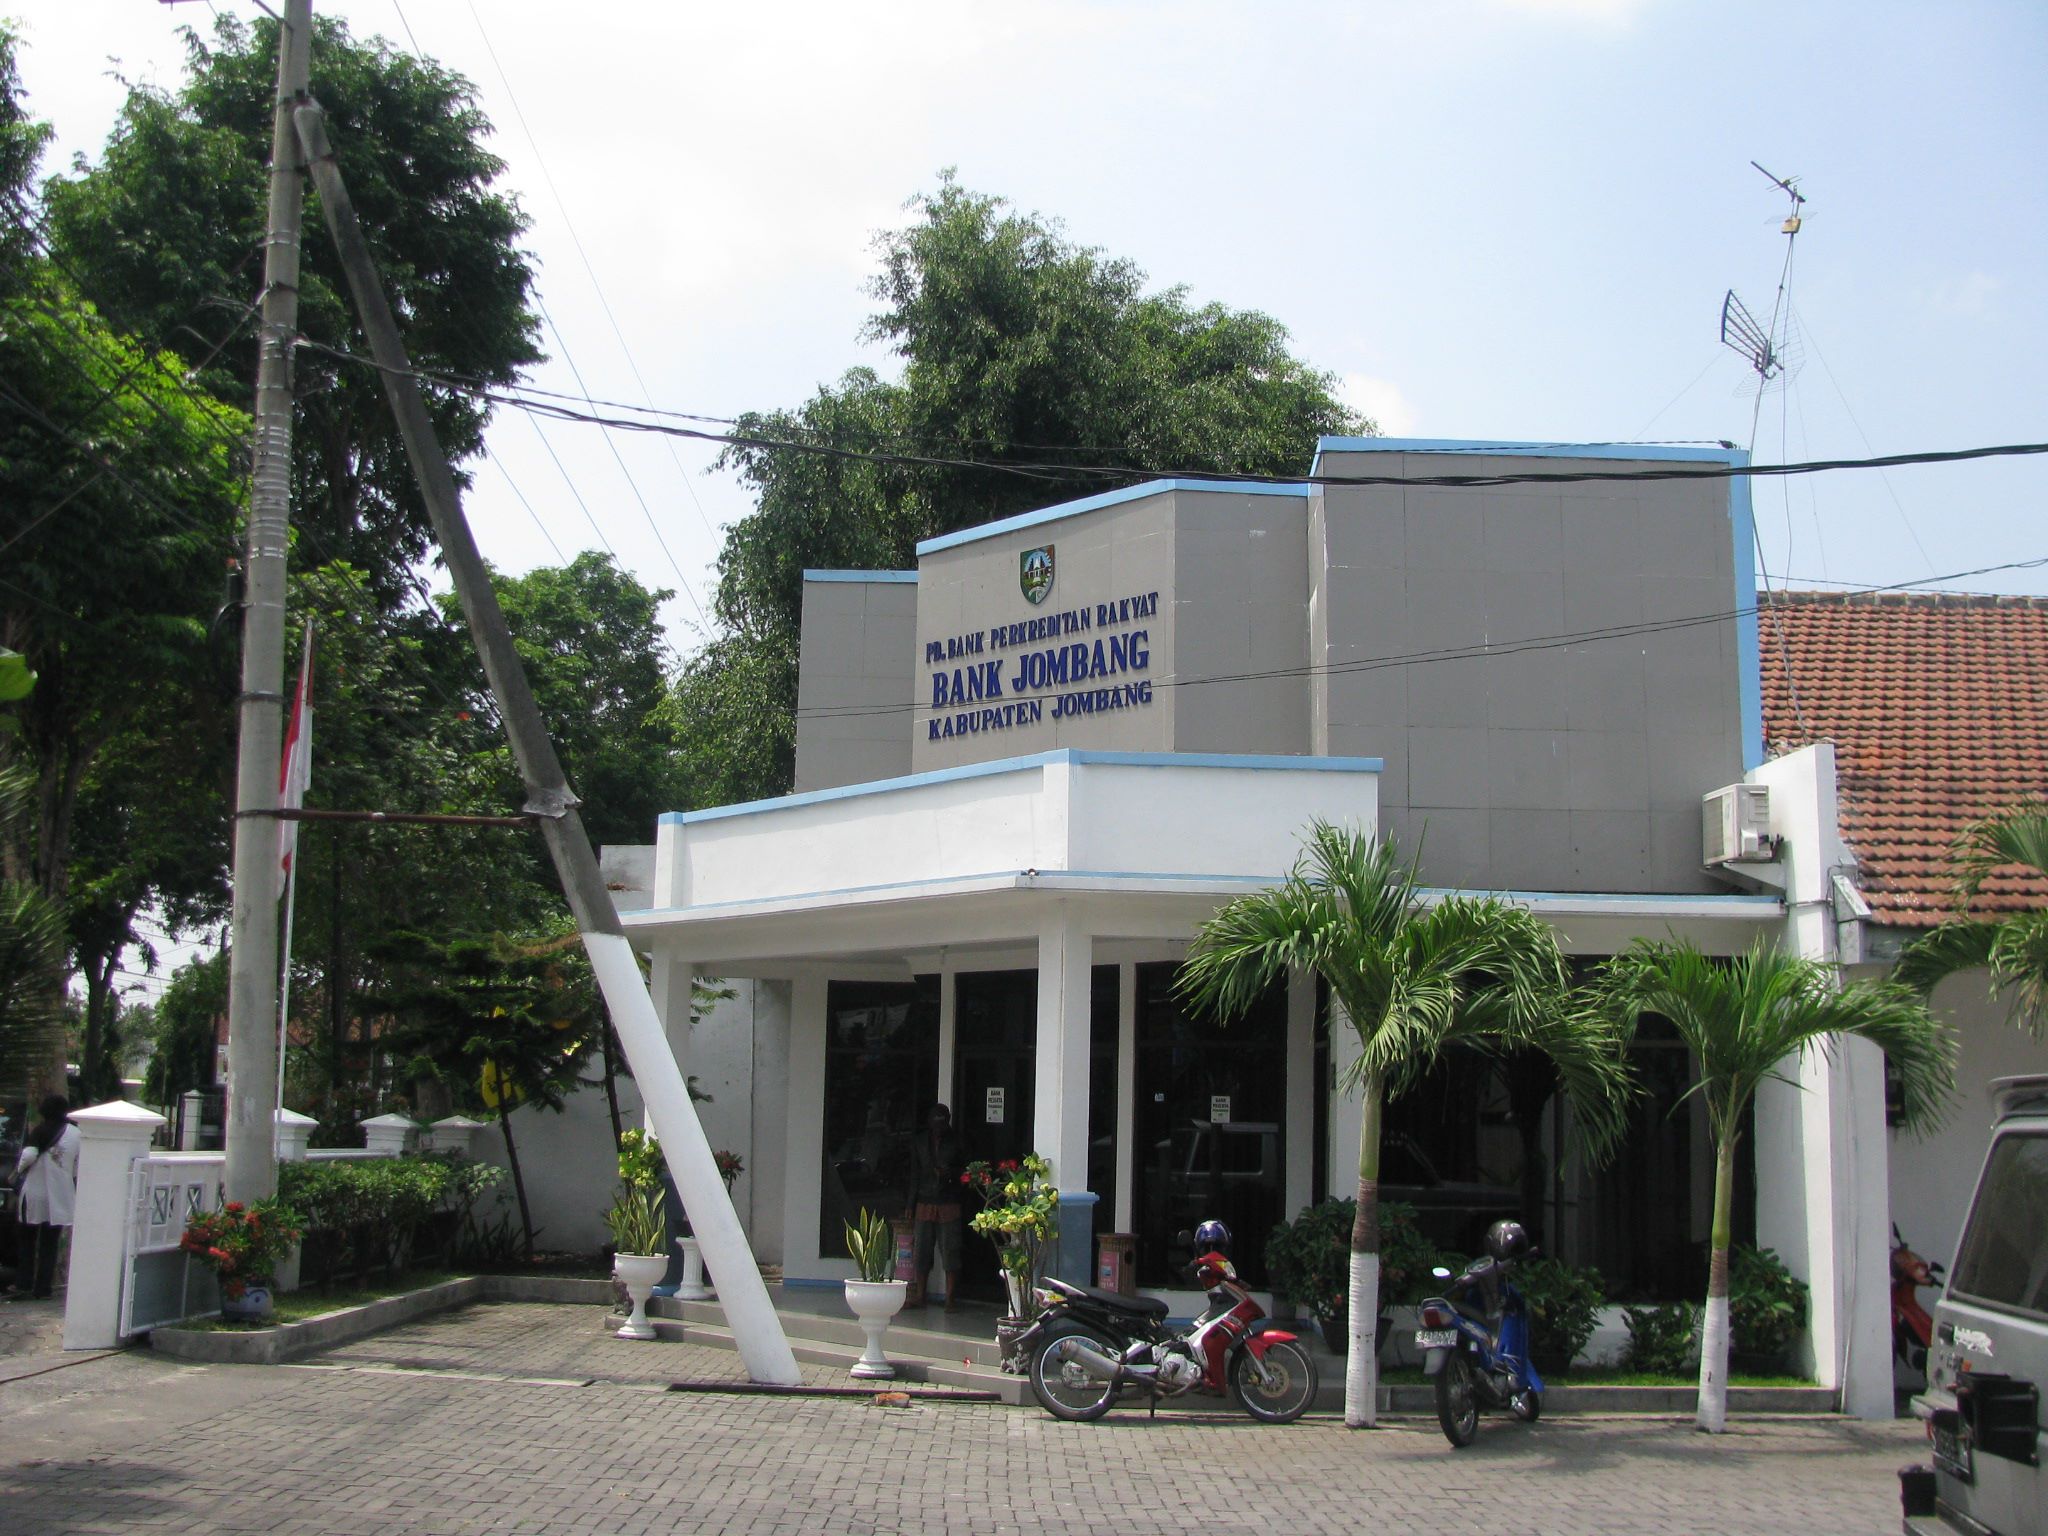 Bank Jombang